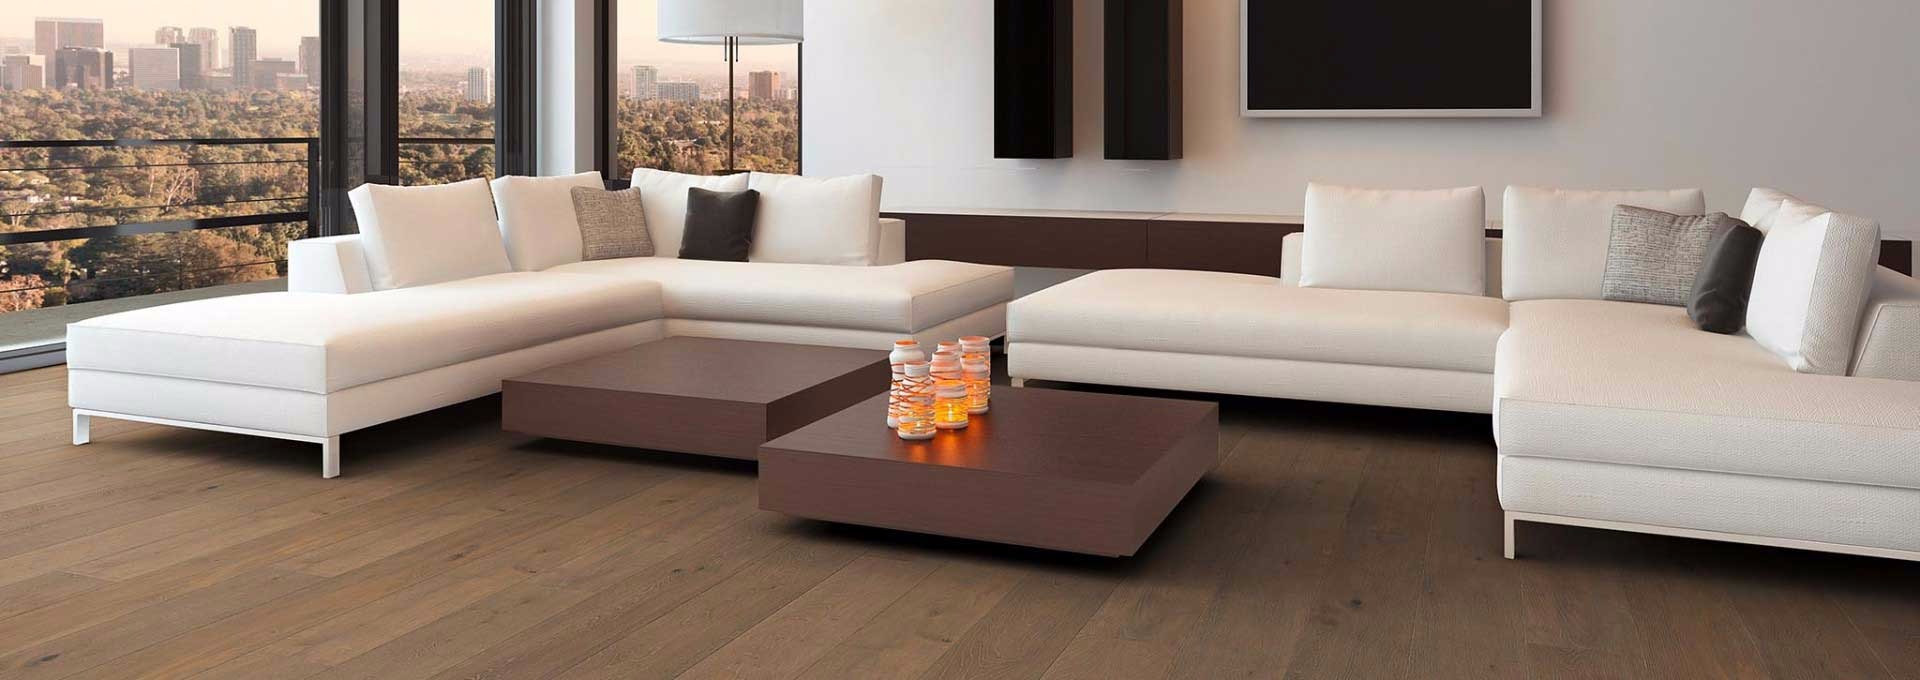 15 Fabulous 3 1 2 Hardwood Flooring 2024 free download 3 1 2 hardwood flooring of wood flooring etx surfaces with regard to etx surfaces wood flooring commercial flooring